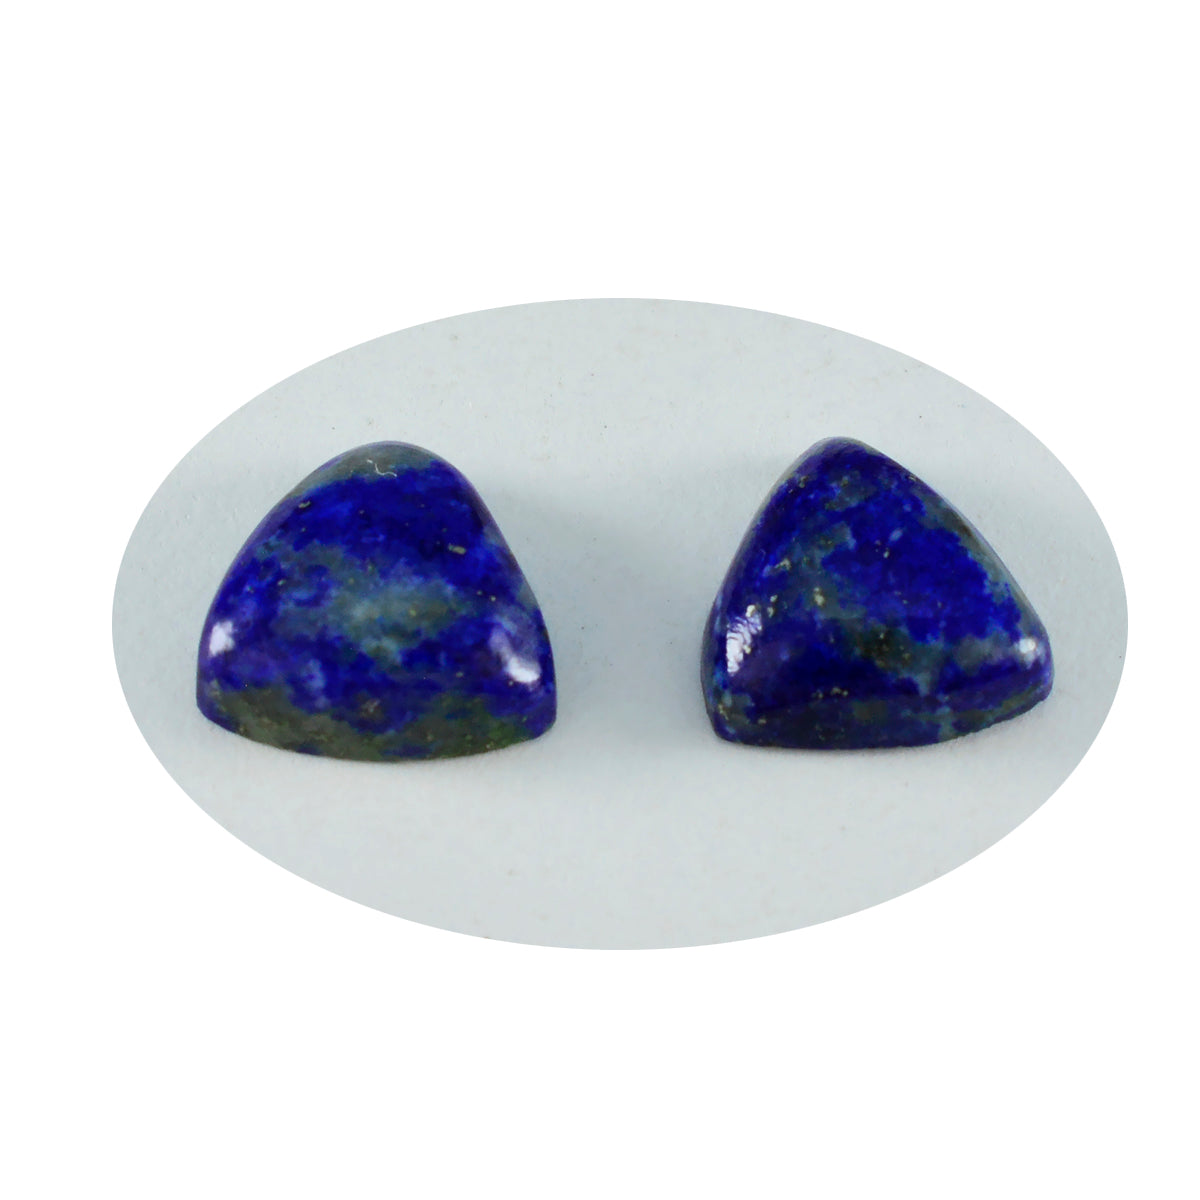 Riyogems 1 Stück blauer Lapislazuli-Cabochon, 10 x 10 mm, Billionenform, gut aussehende Qualitätsedelsteine